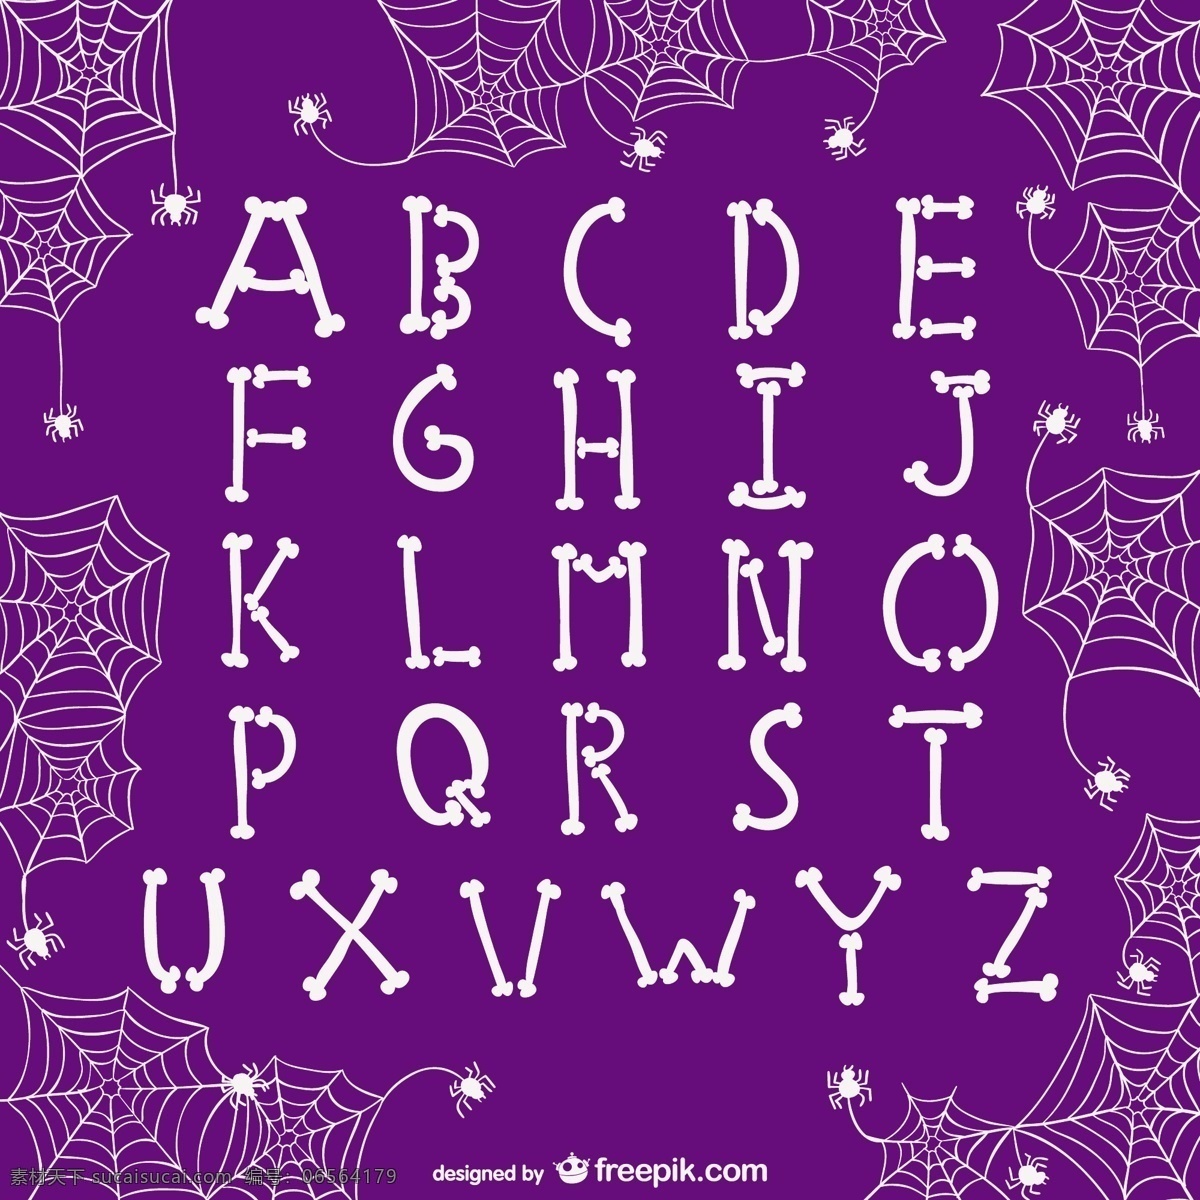 万圣节 字母表 字母 字体 万圣节的夜晚 矢量 吓人 字母矢量 顺序 排列 怪异的 万圣节的载体 紫色